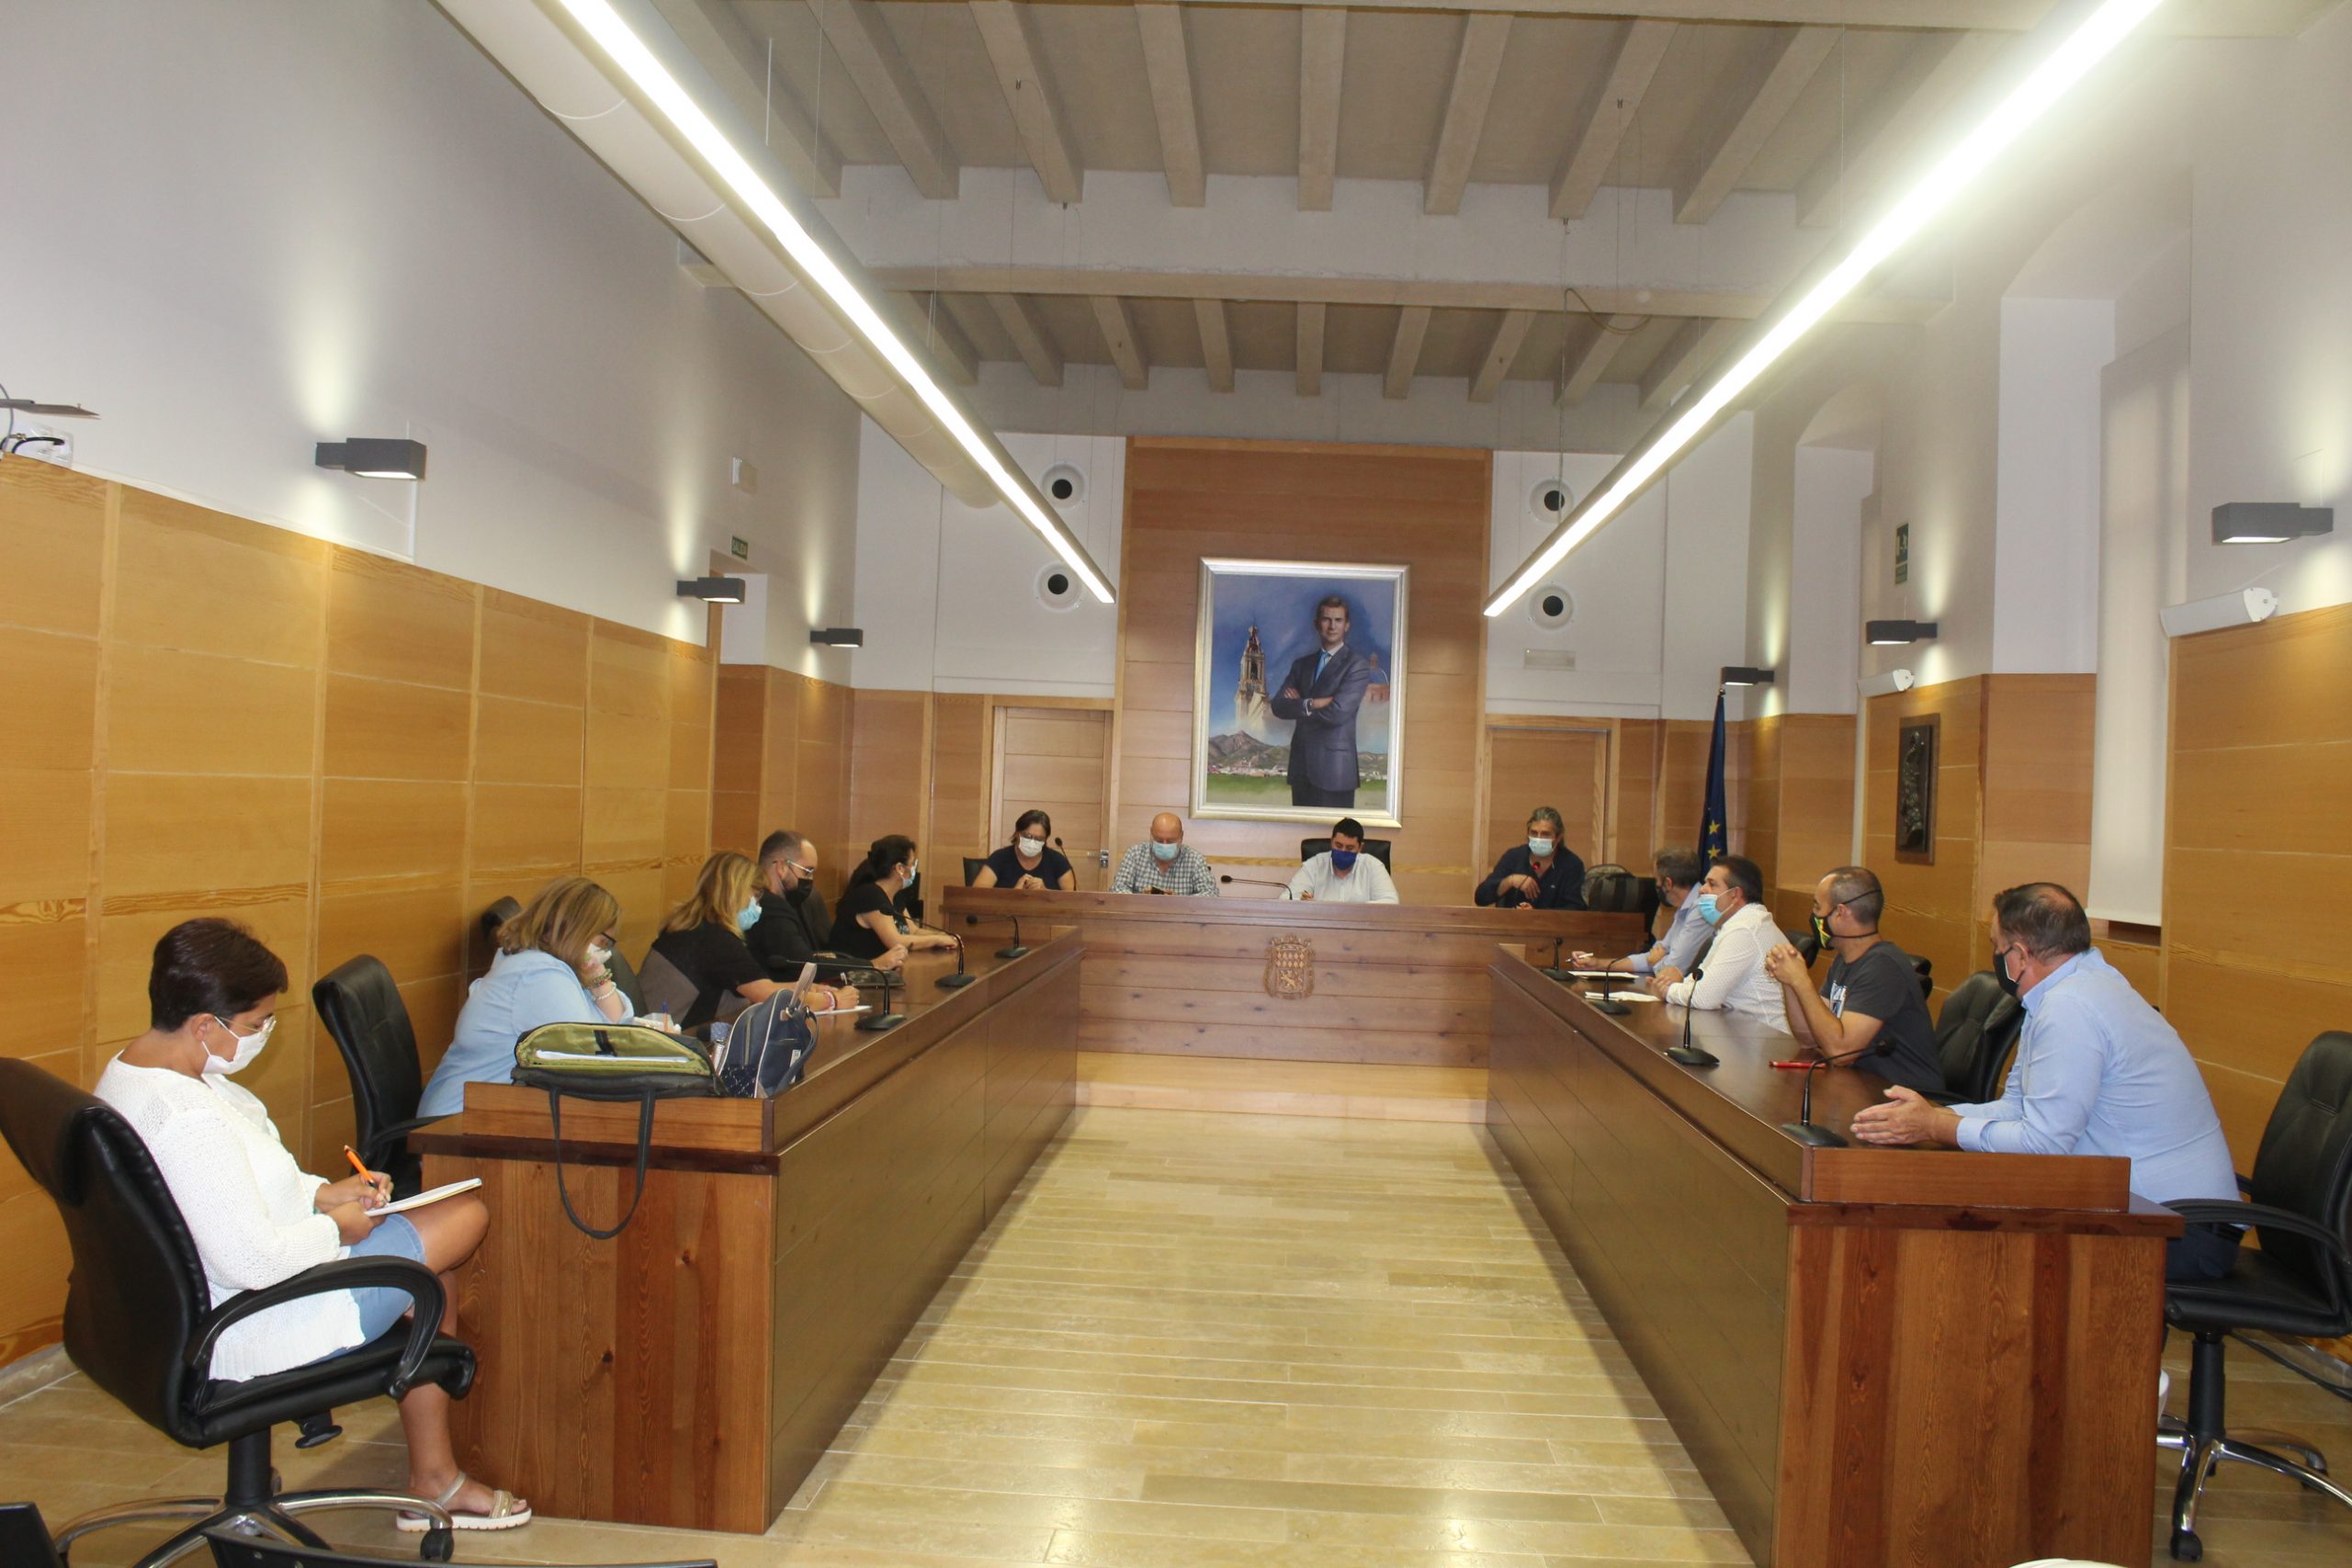 11 municipios de la Plana Baixa estudian mancomunarse para ofrecer mejores servicios sociales